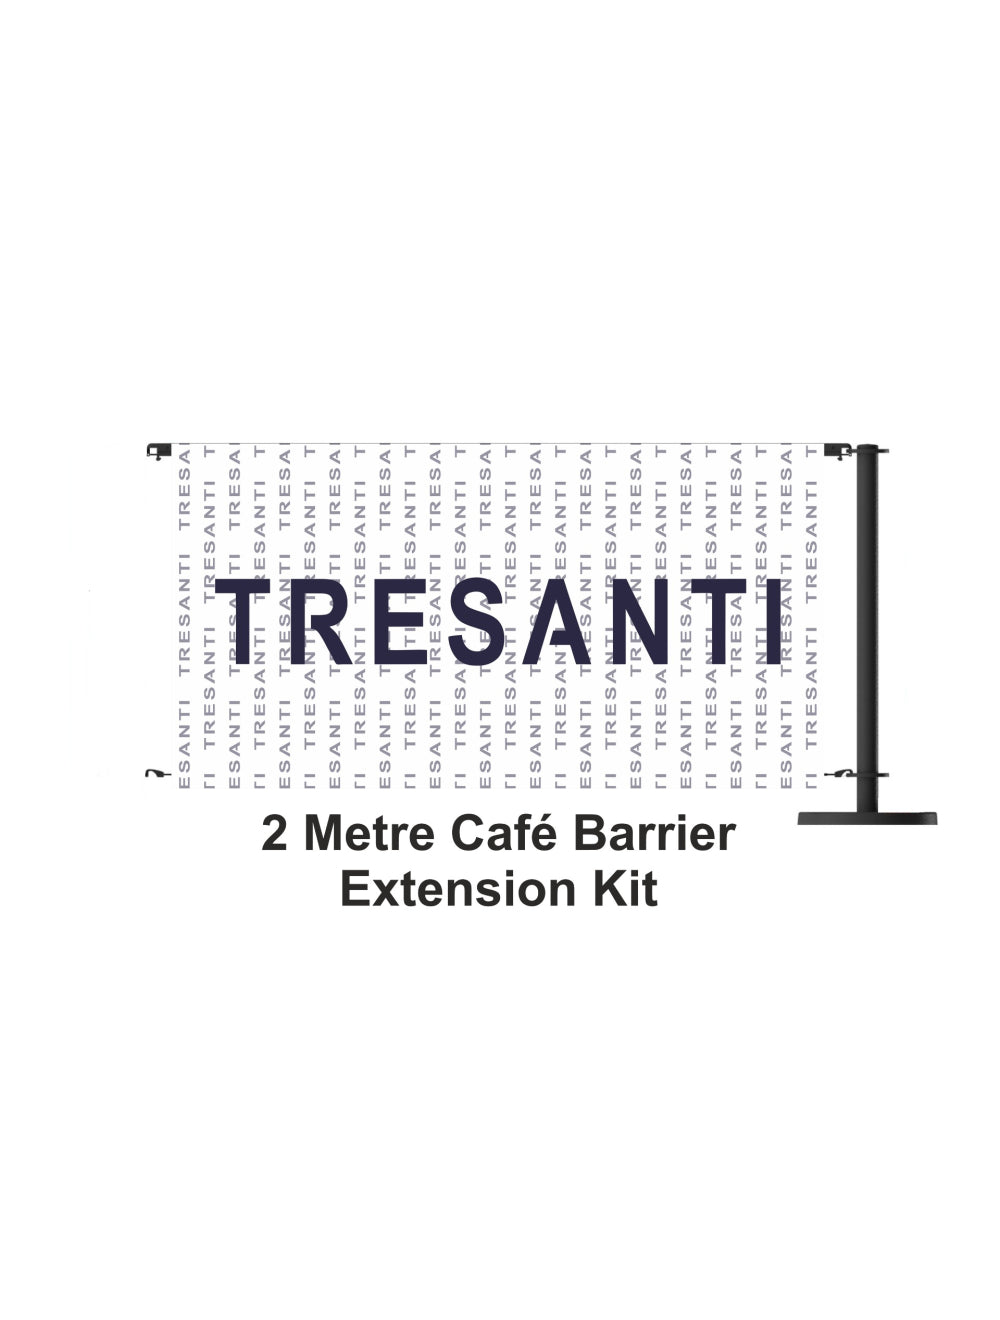 2 Meter Cafe Barrier Extension Kit